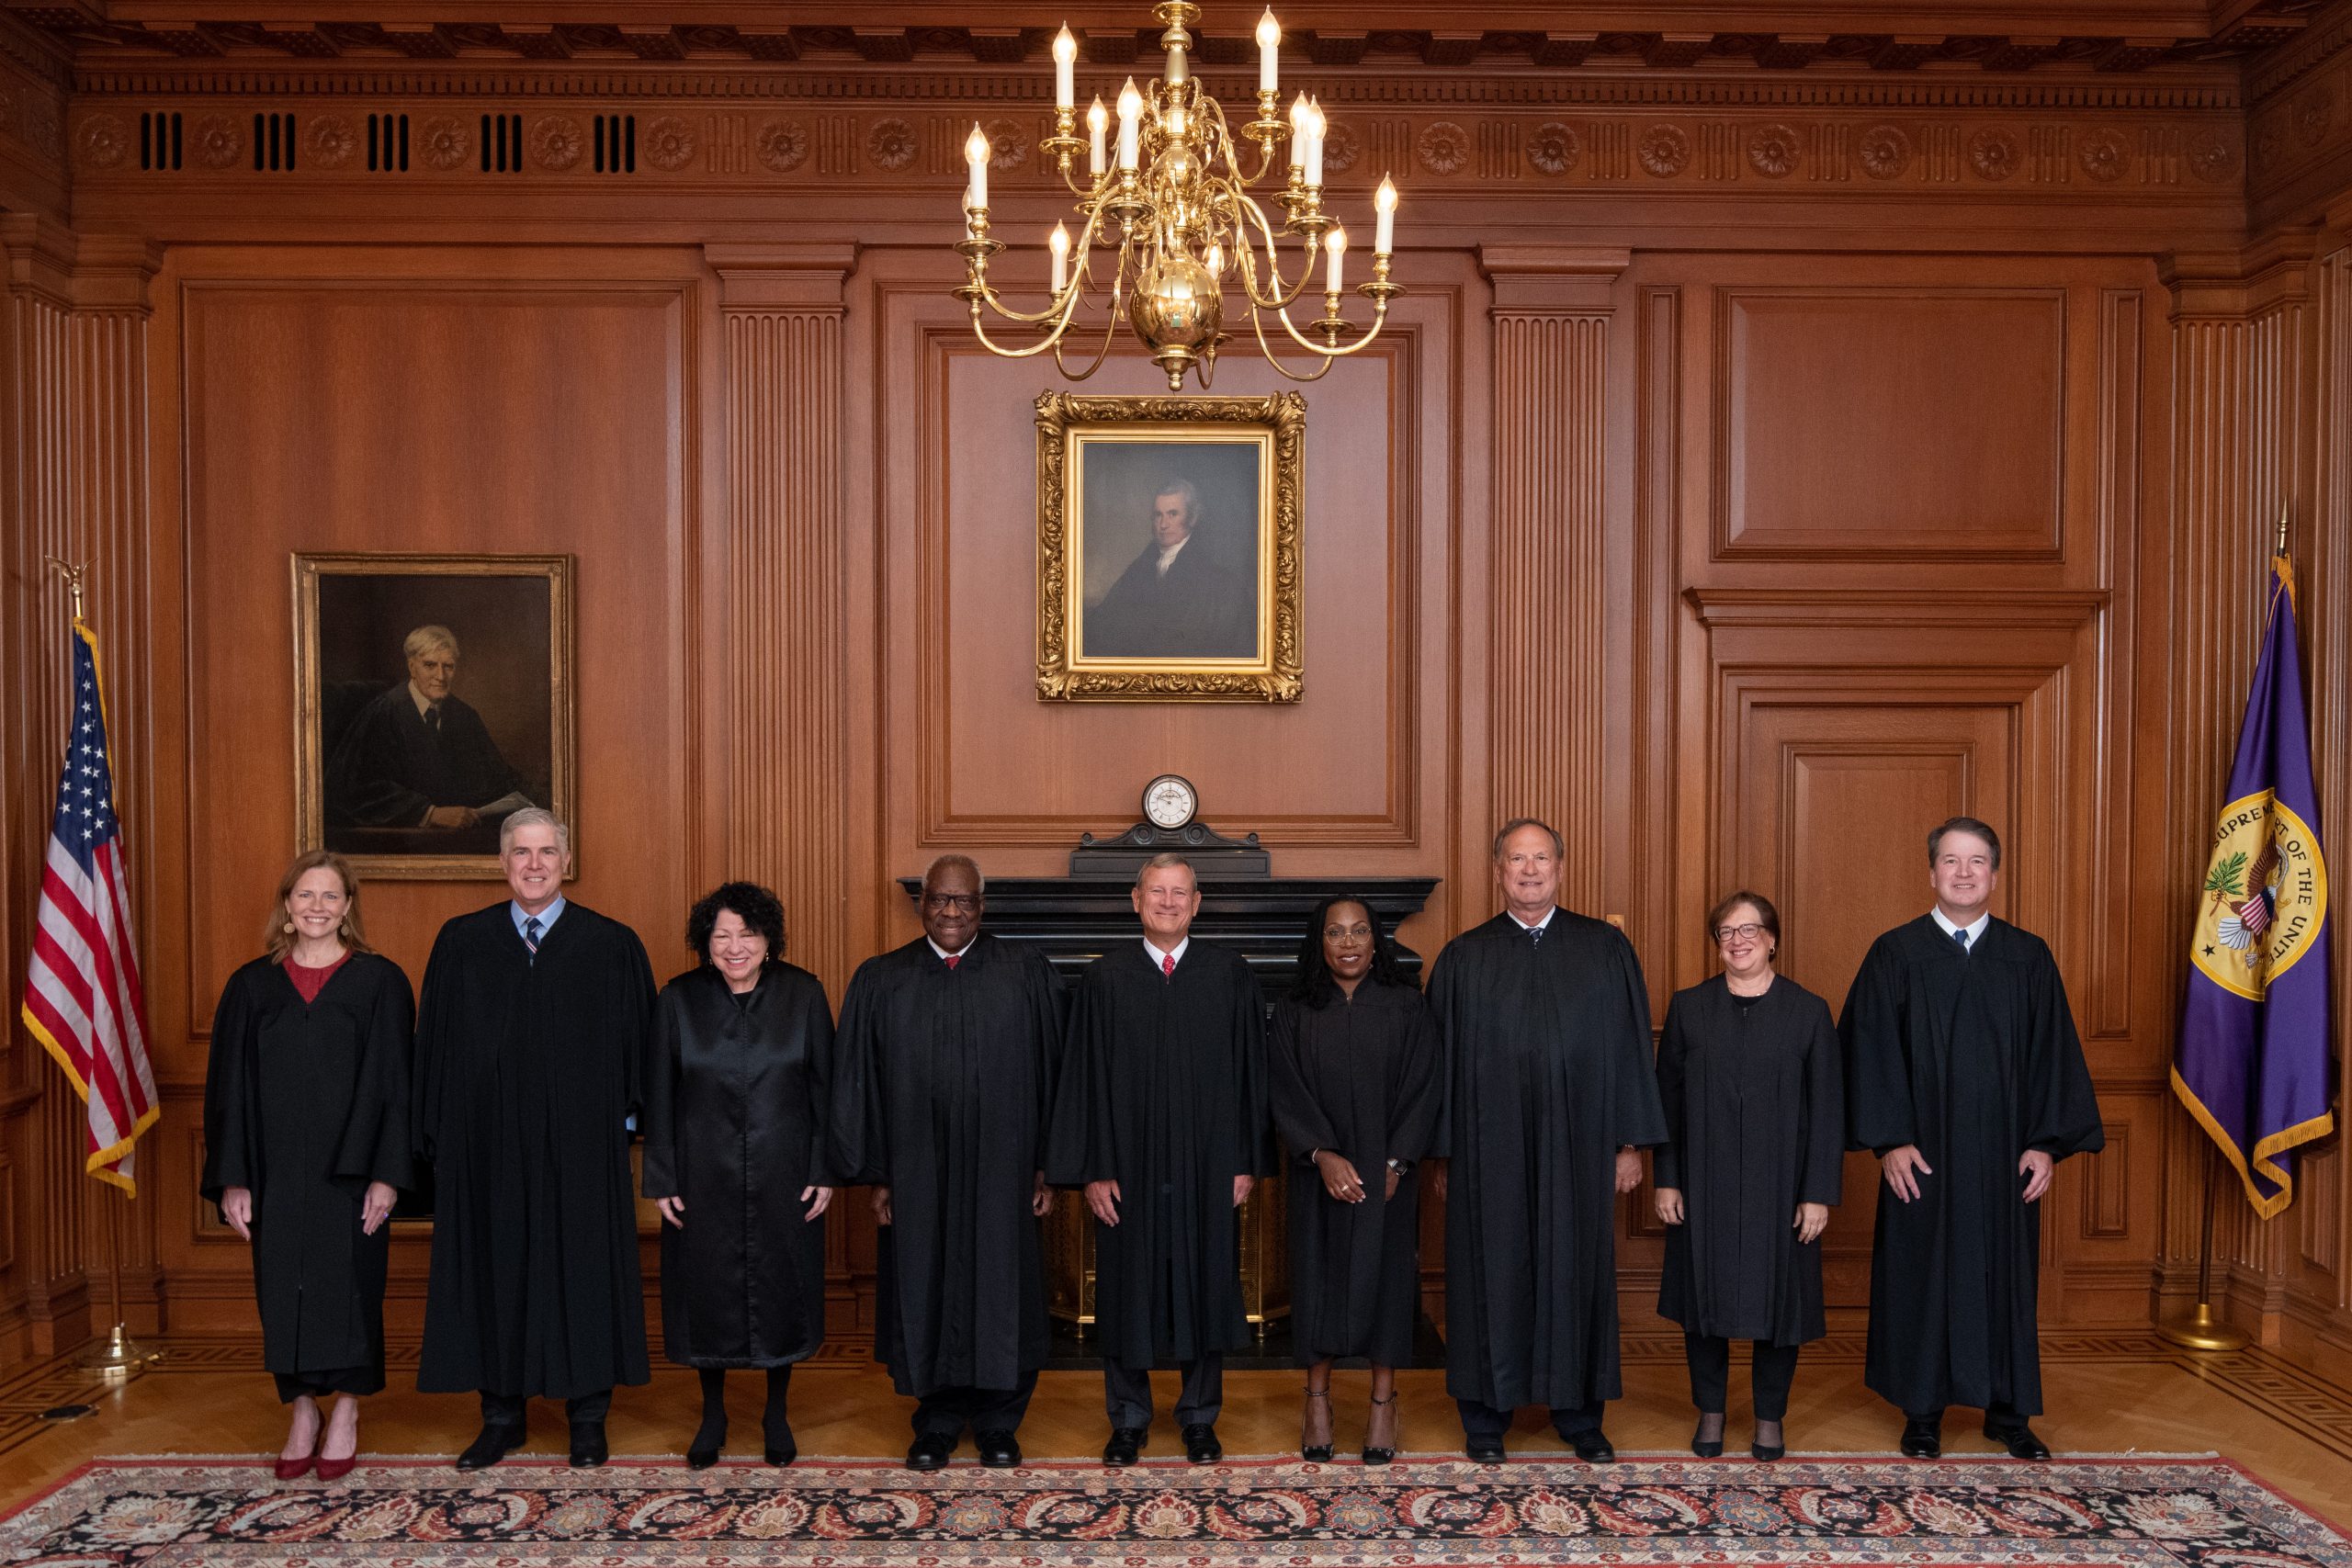 9 قاضی در کنار هم ایستاده اند و ردای سیاه قضایی بر تن دارند.